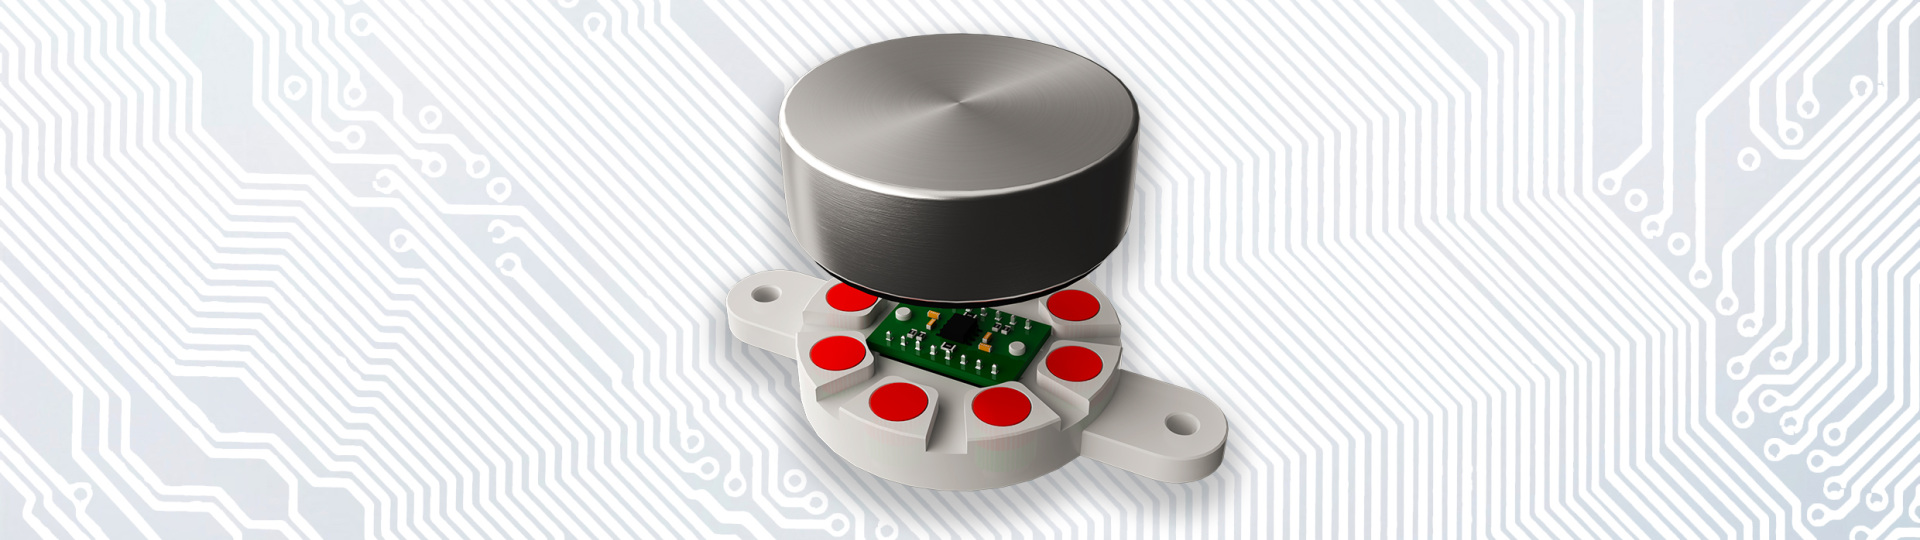 Magnetischer Encoder mit abnehmbarem Knopf